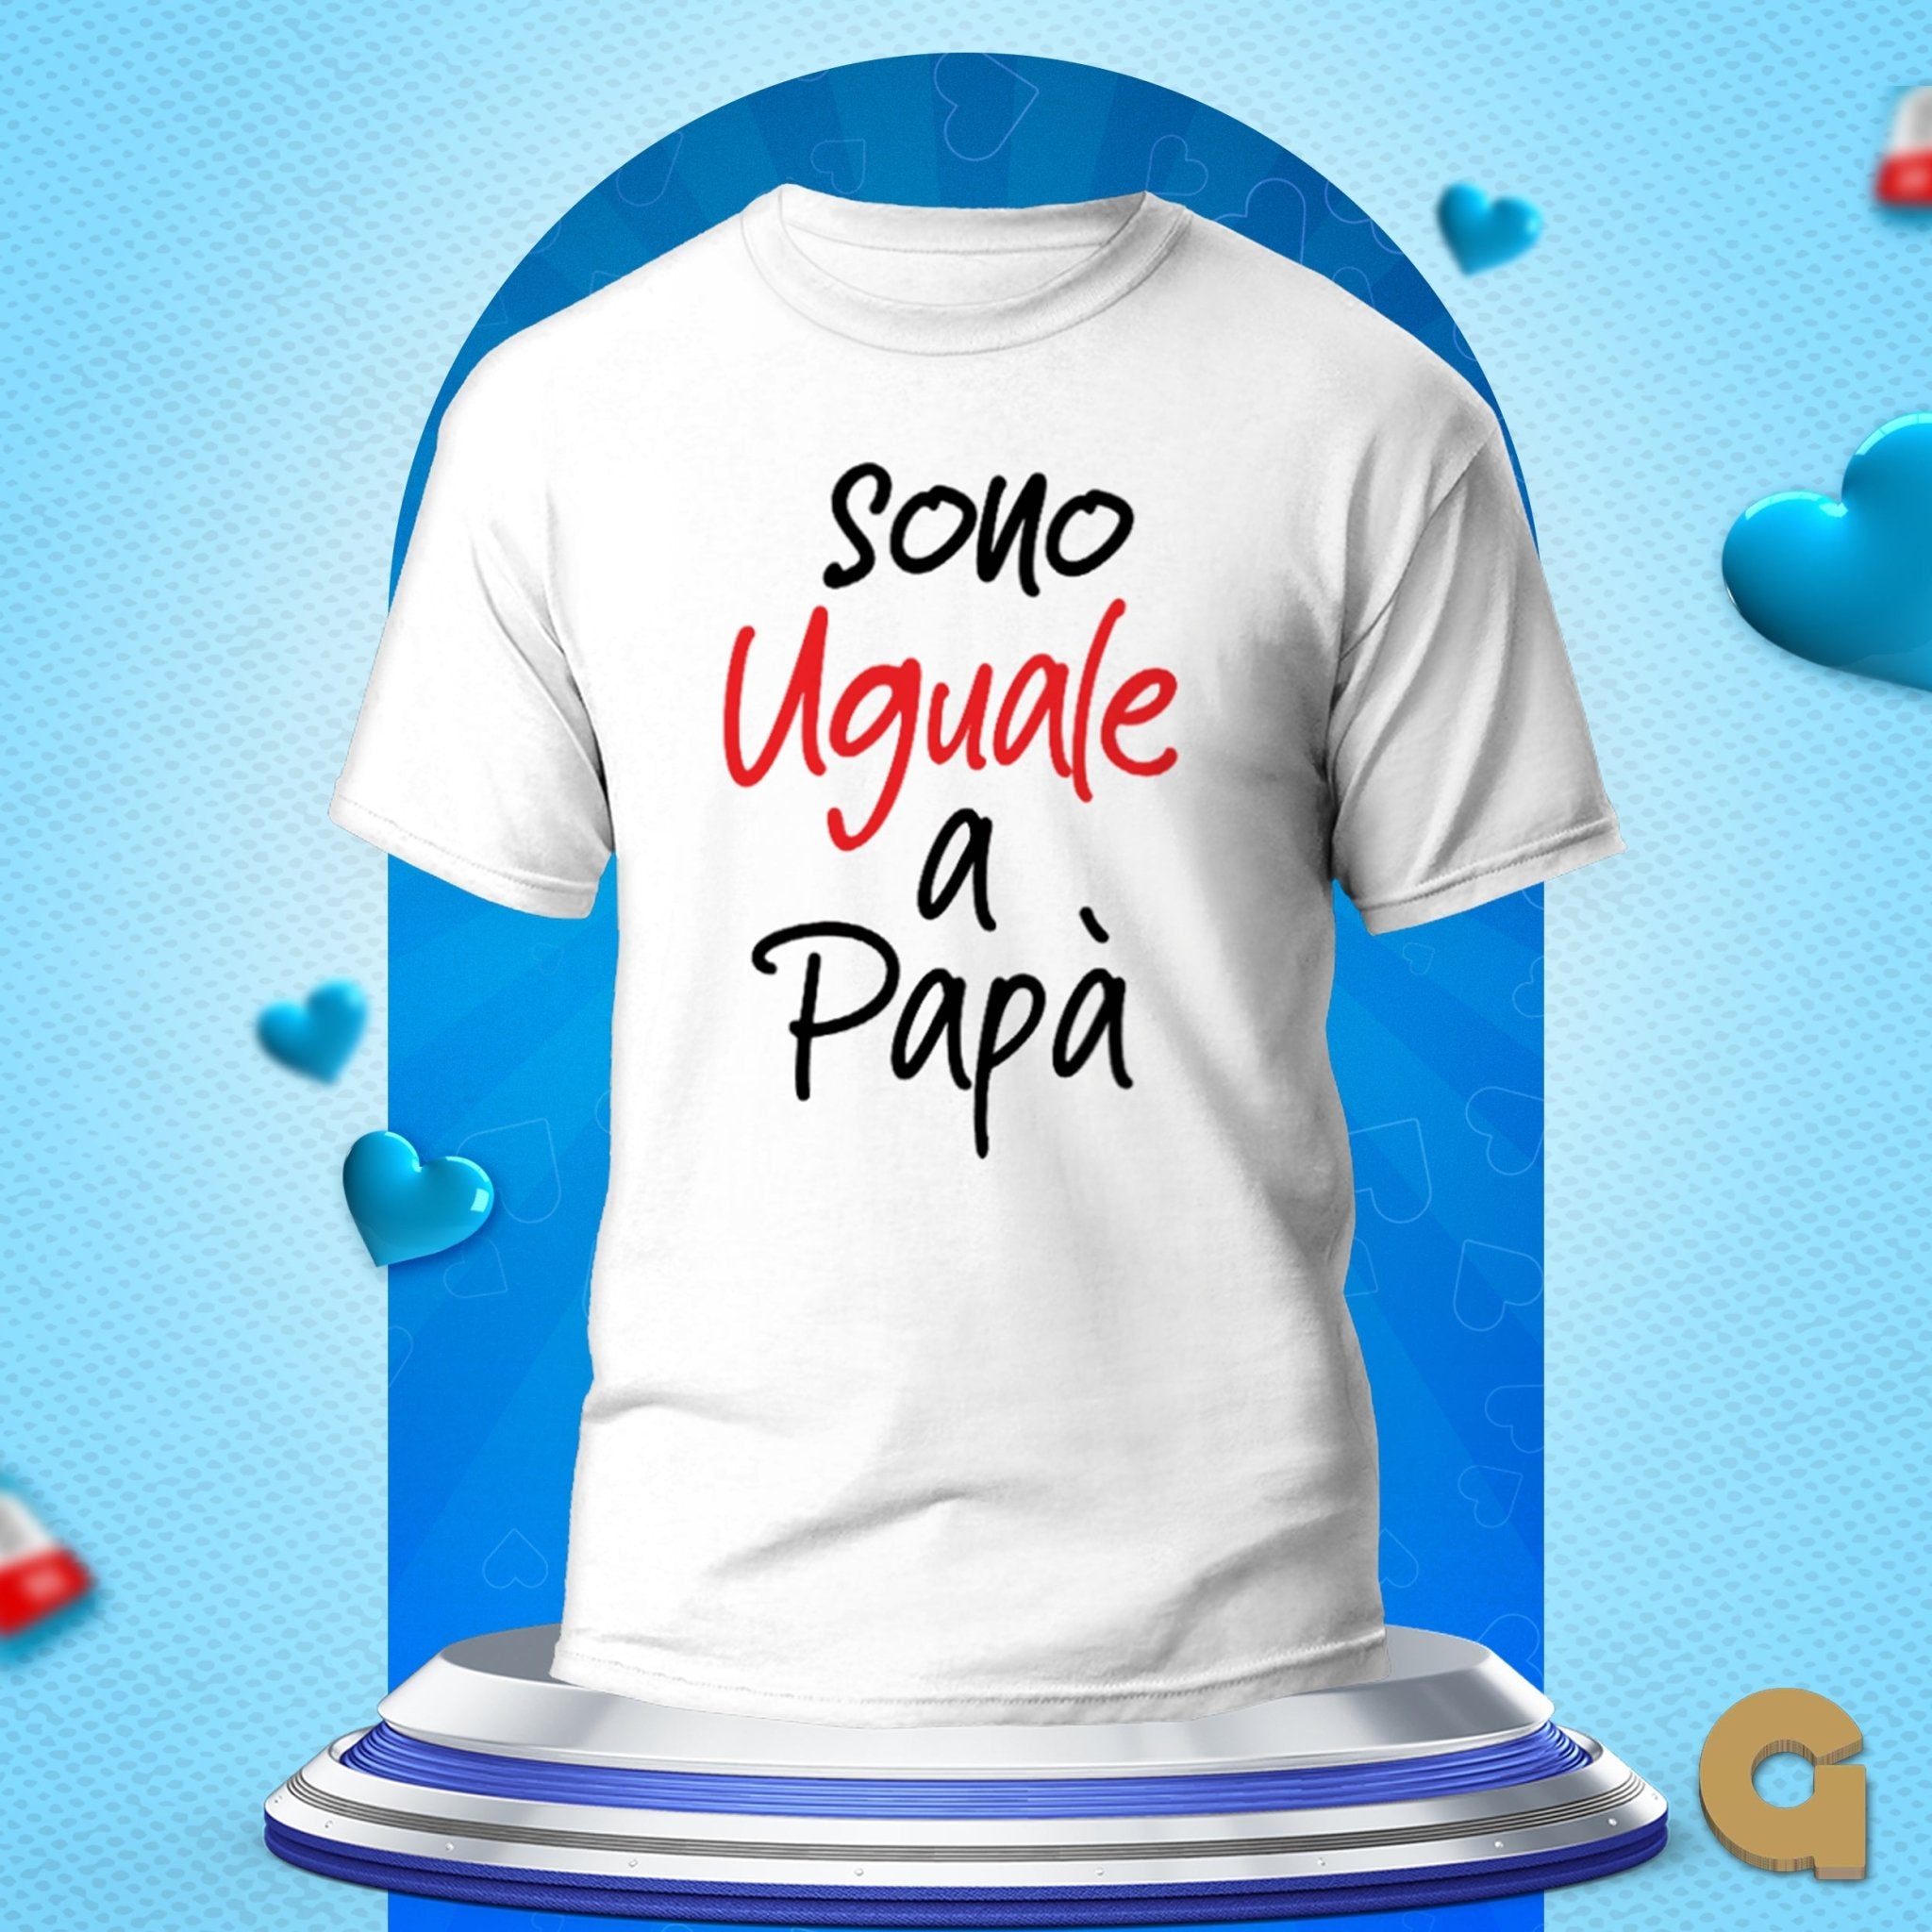 T-shirt festa del Papà - Copisteria Graphic